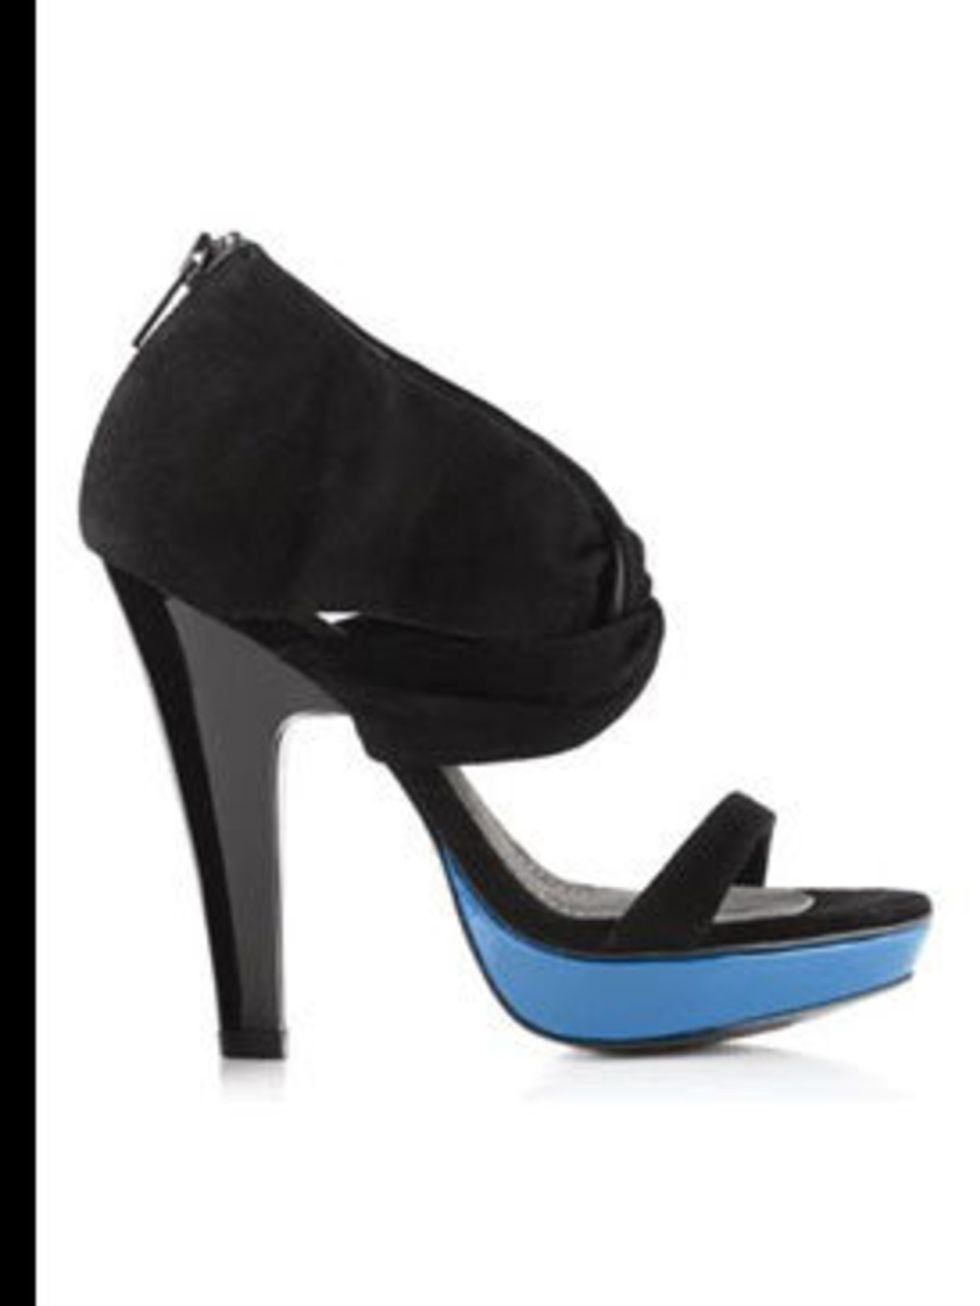 <p>Shoe, £180 by <a href="http://www.kurtgeiger.com/online-shop/75621-kurt-geiger-aueley">Kurt Geiger</a></p>